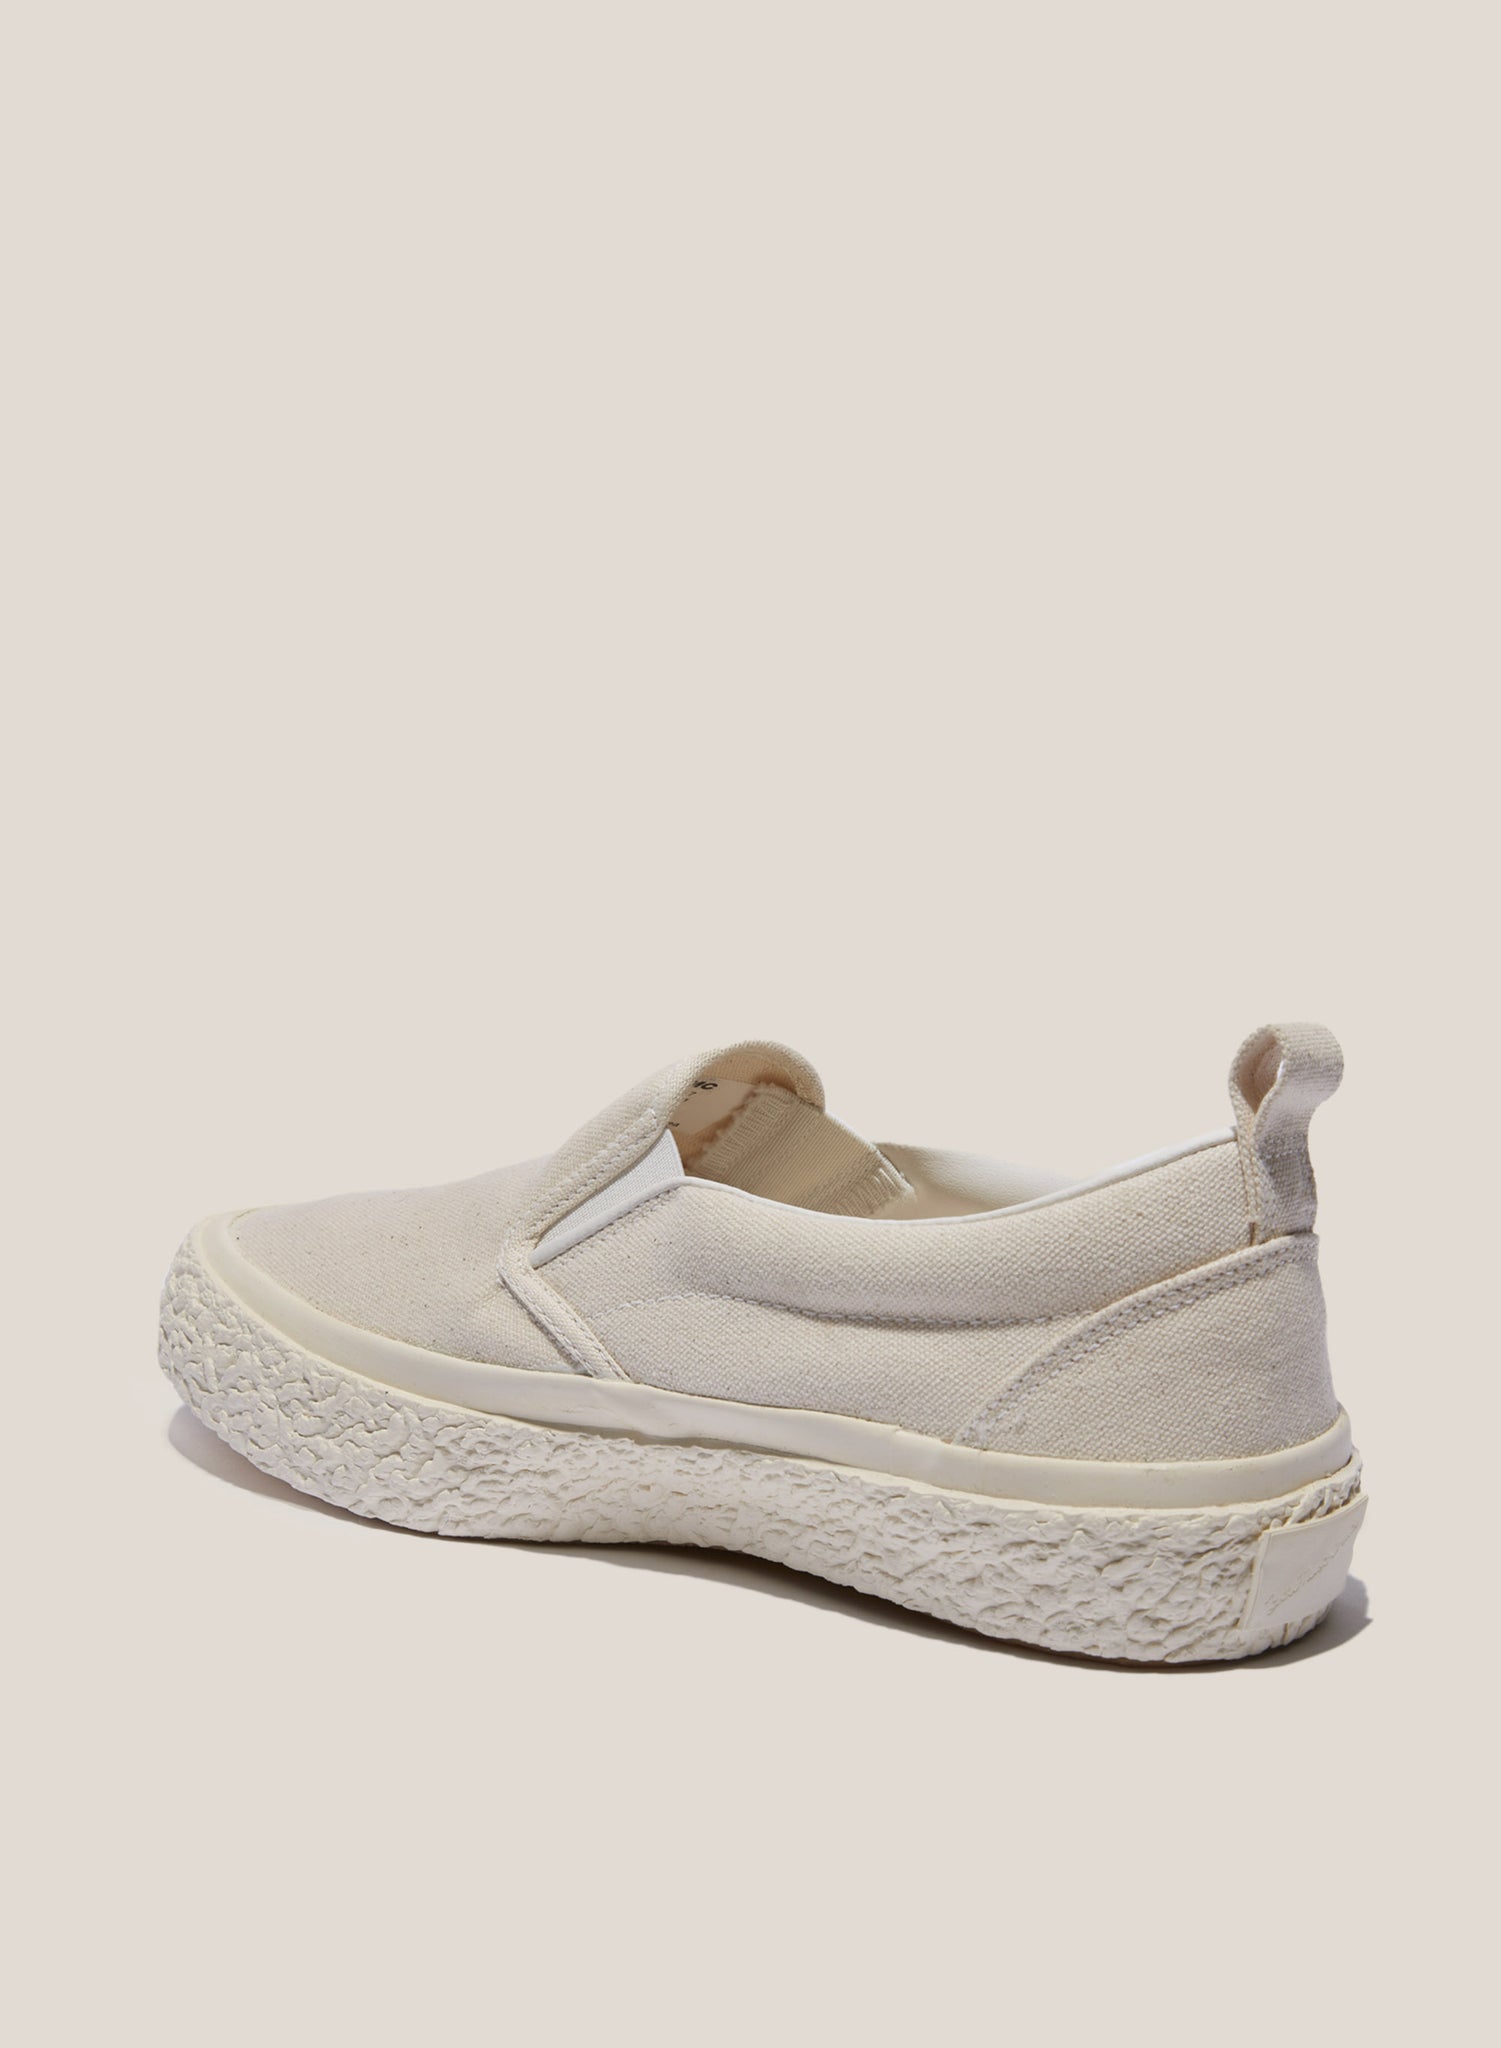 YMC Slip On Sneaker Off White